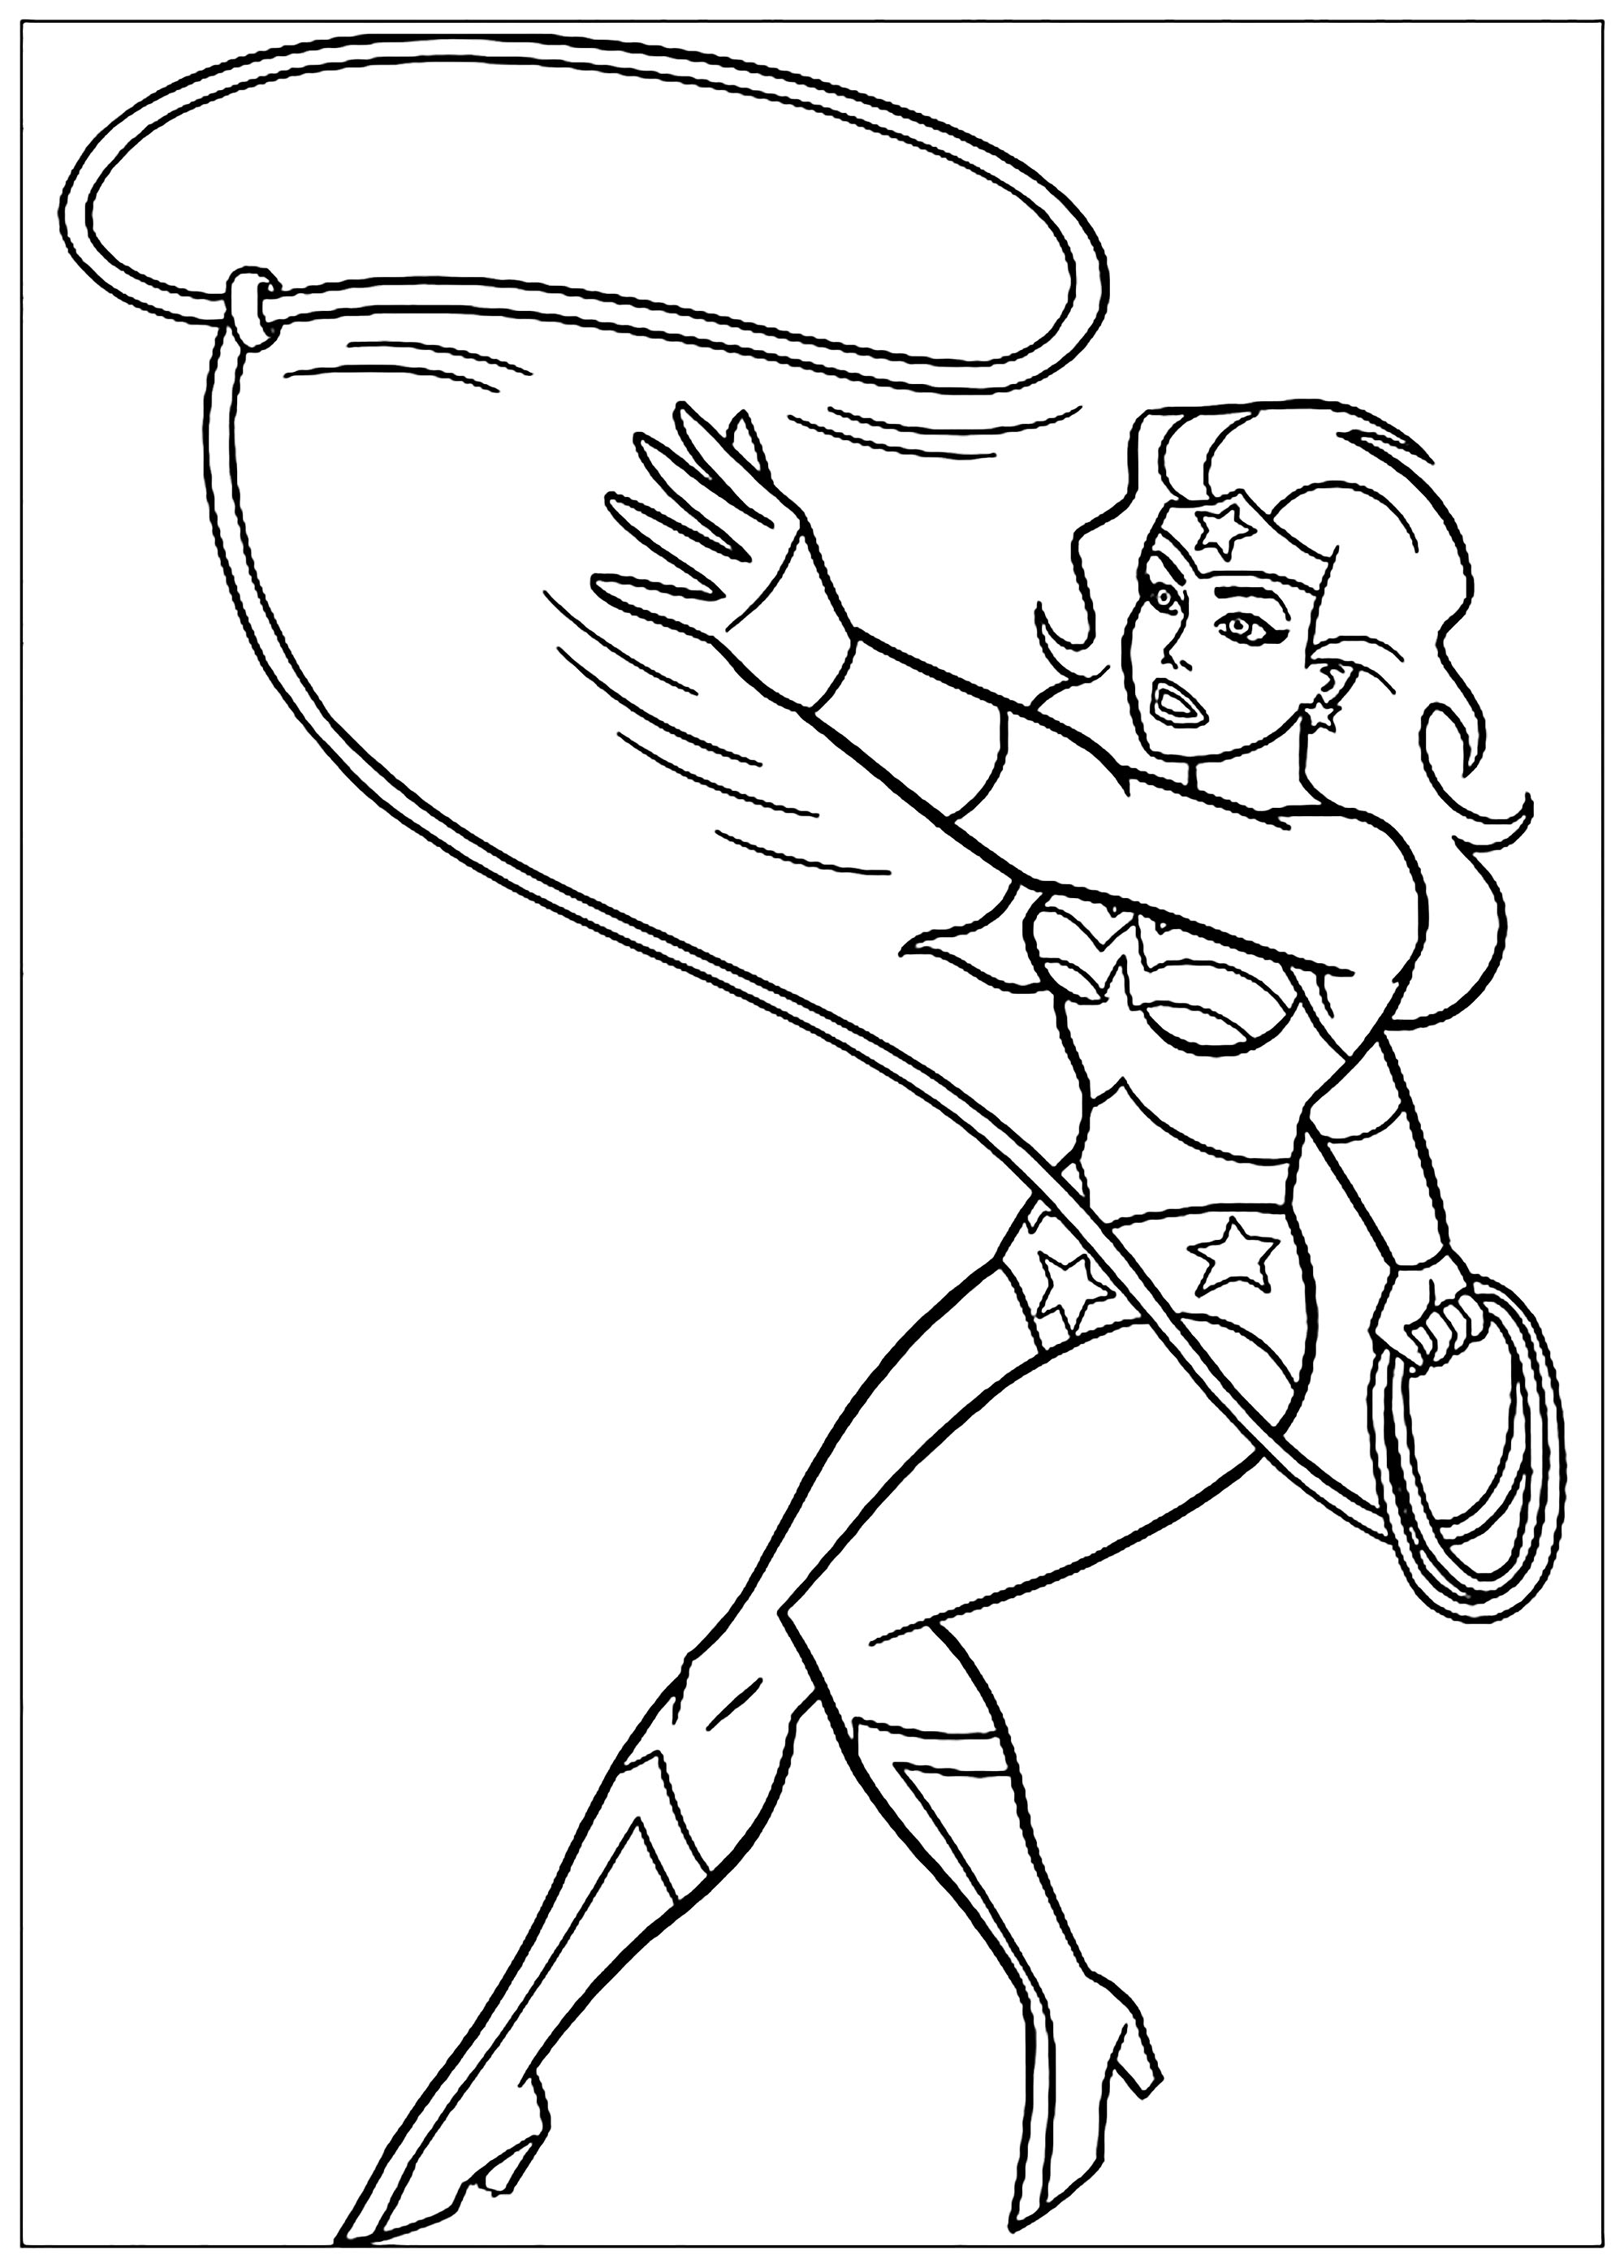 É a sua vez de colorir a super-heroína em acção!